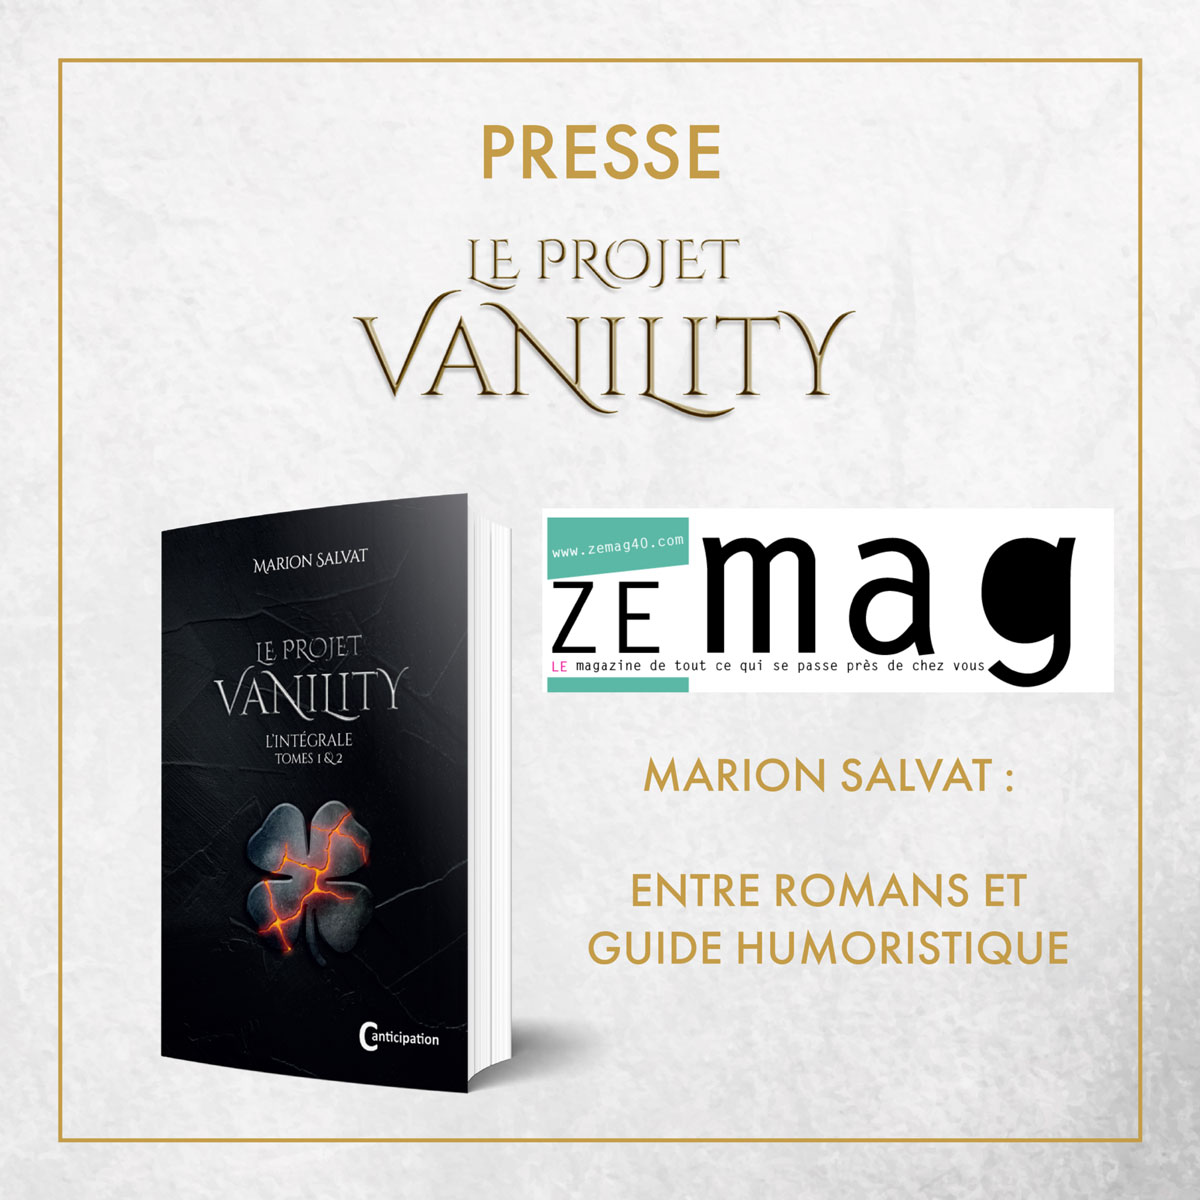 Presse - Marion Salvat - Autrice de la quadrilogie Le Projet vanility - Young adult - Romans dystopiques - Anticipation